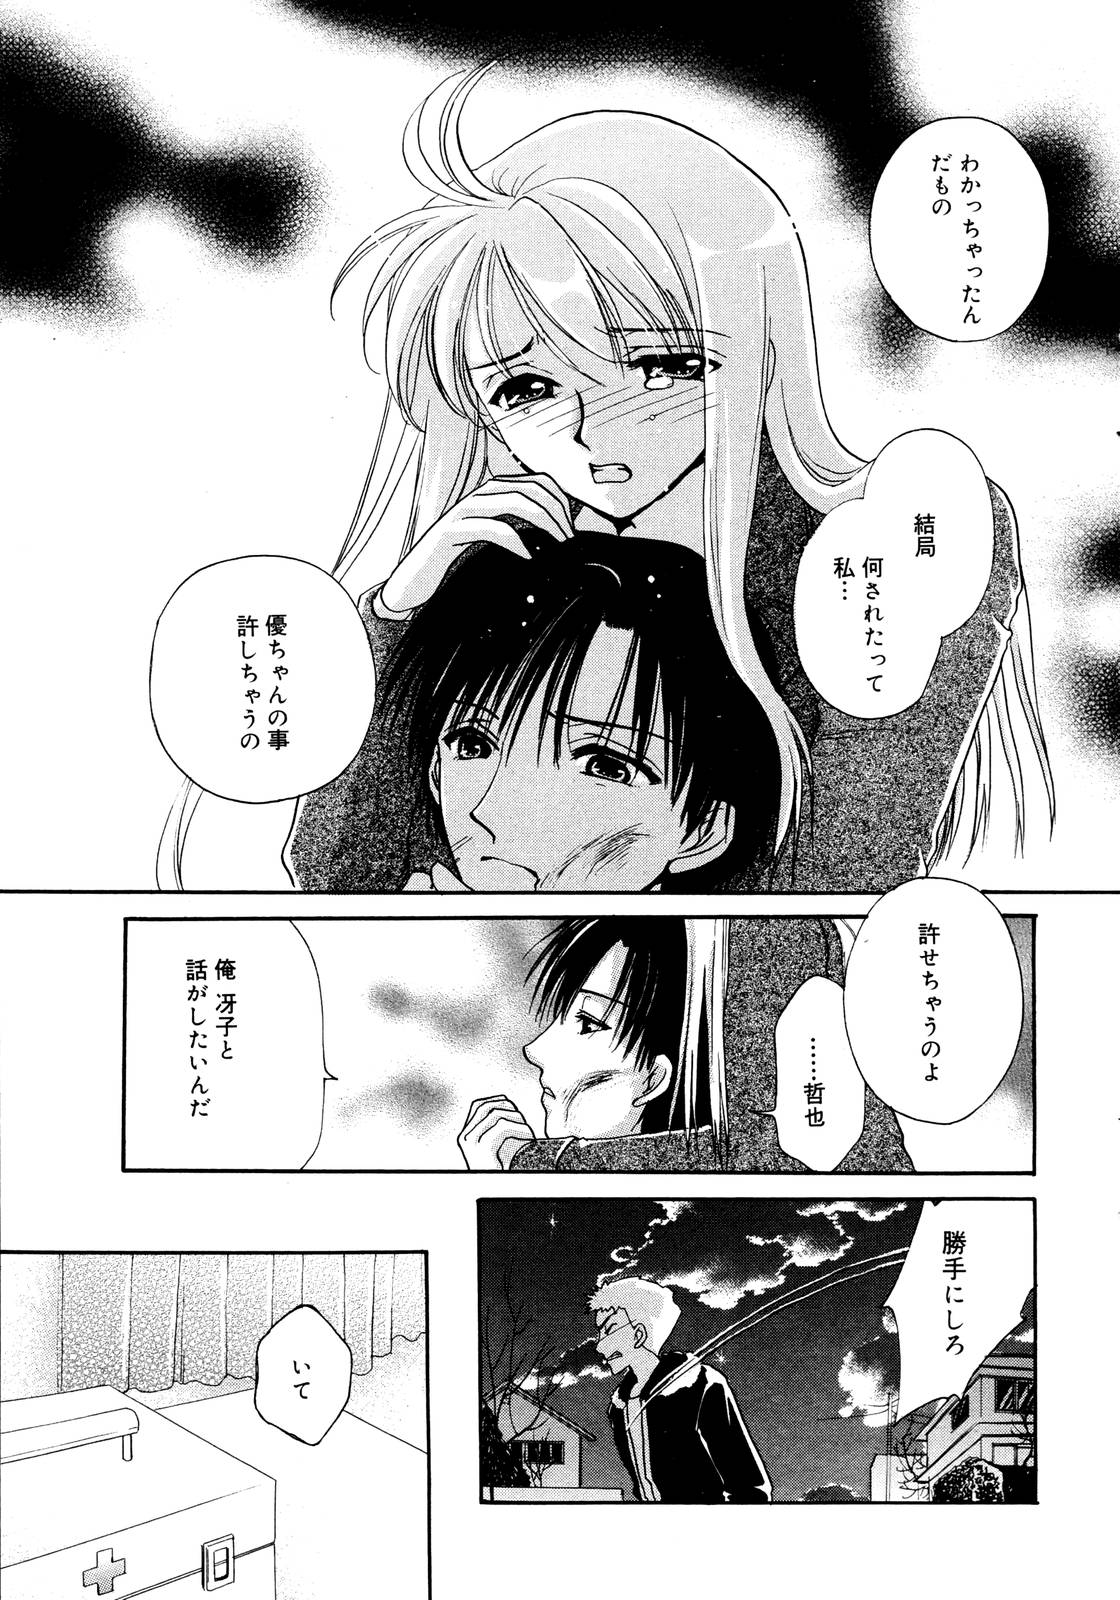 Manga Bangaichi 2006-01 page 13 full